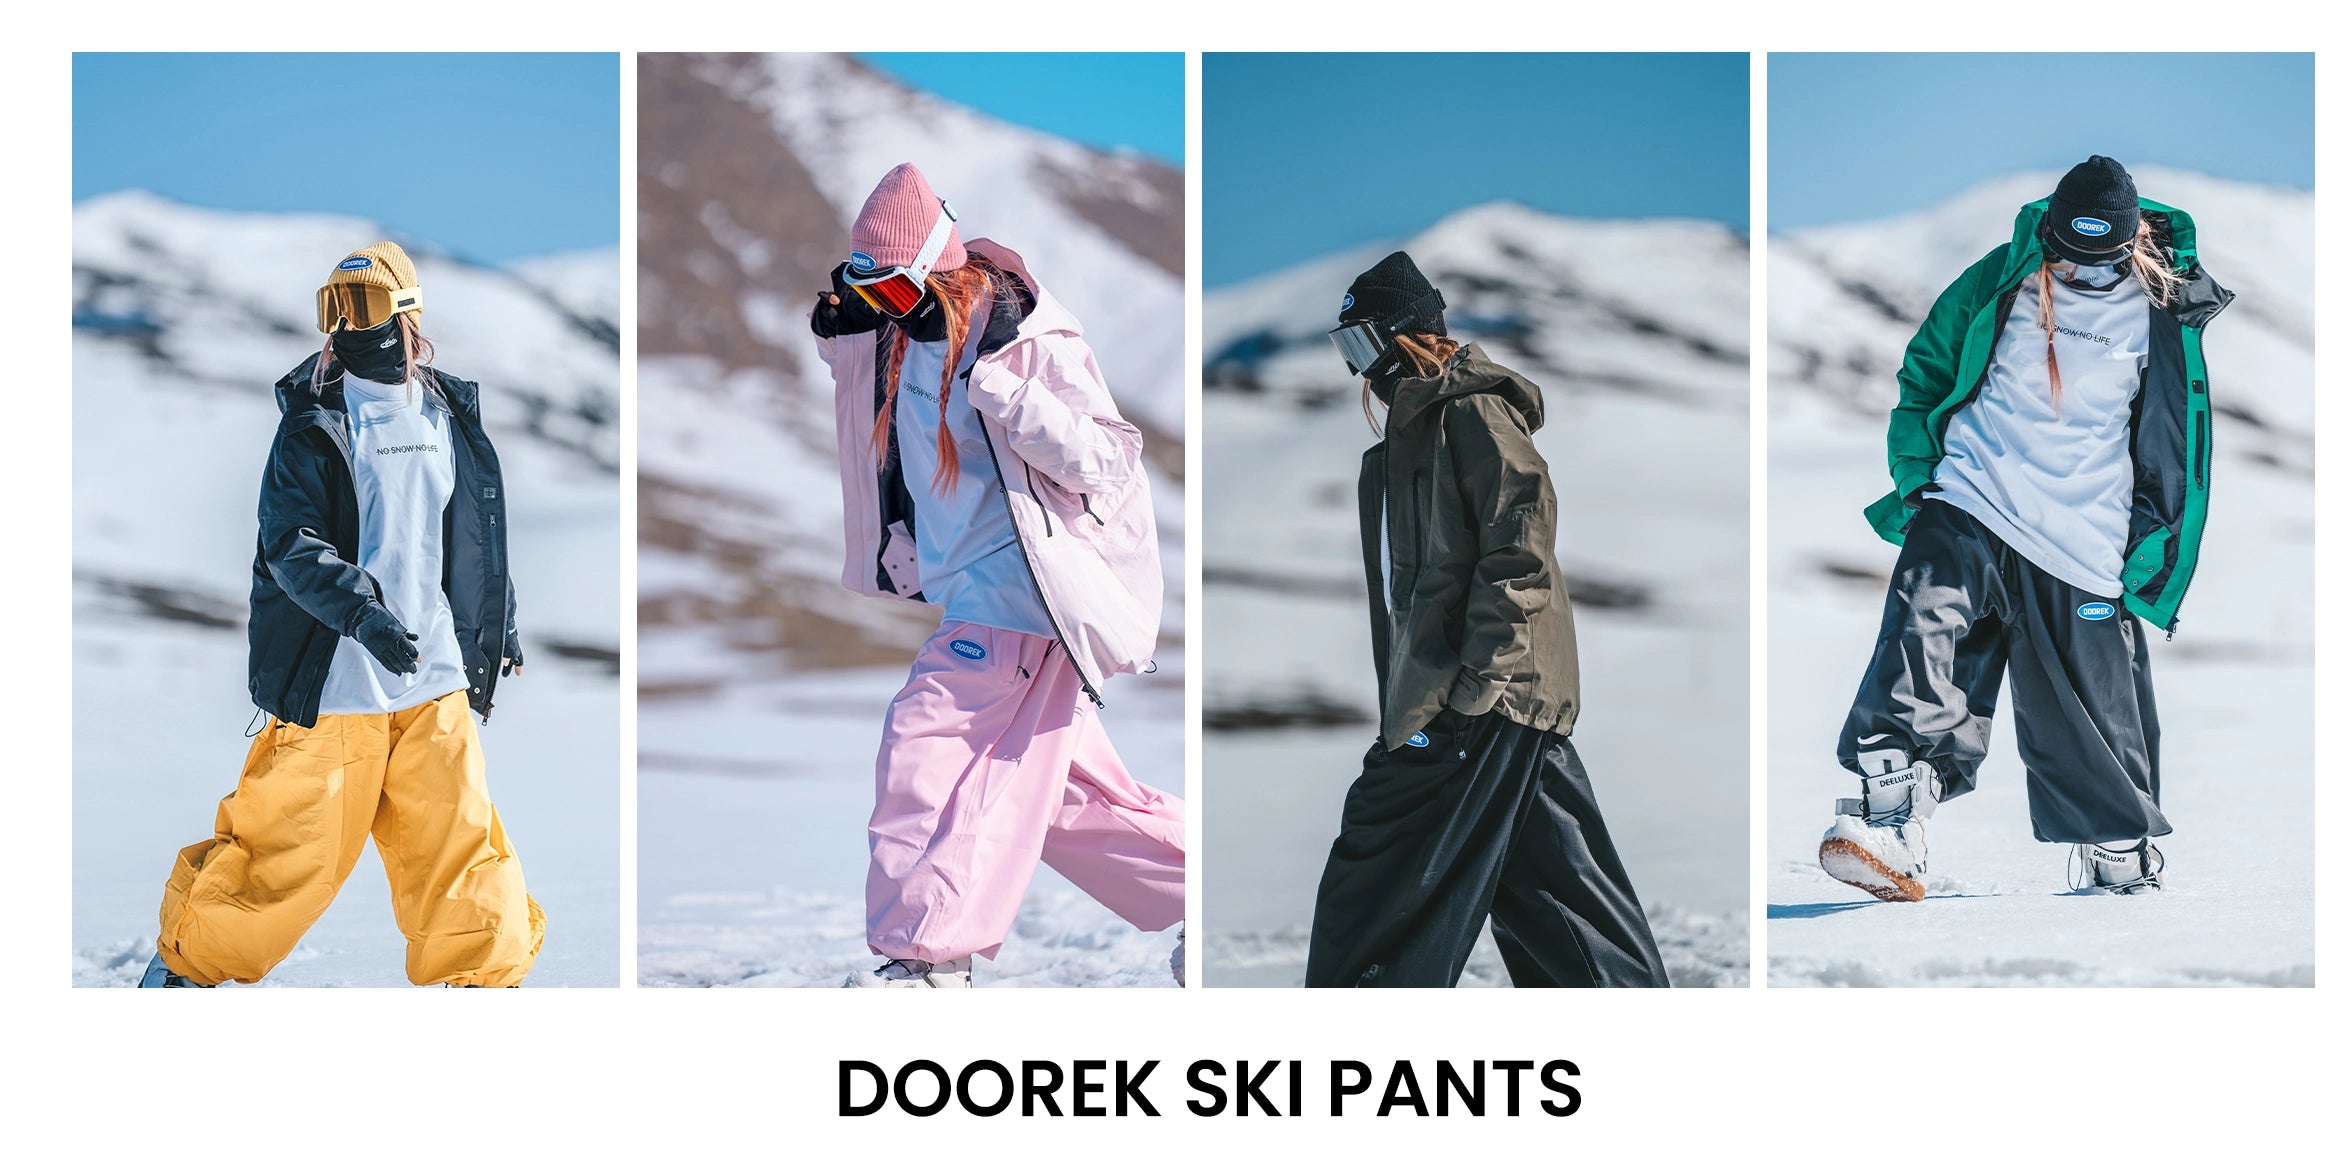 Doorek ski pants full view